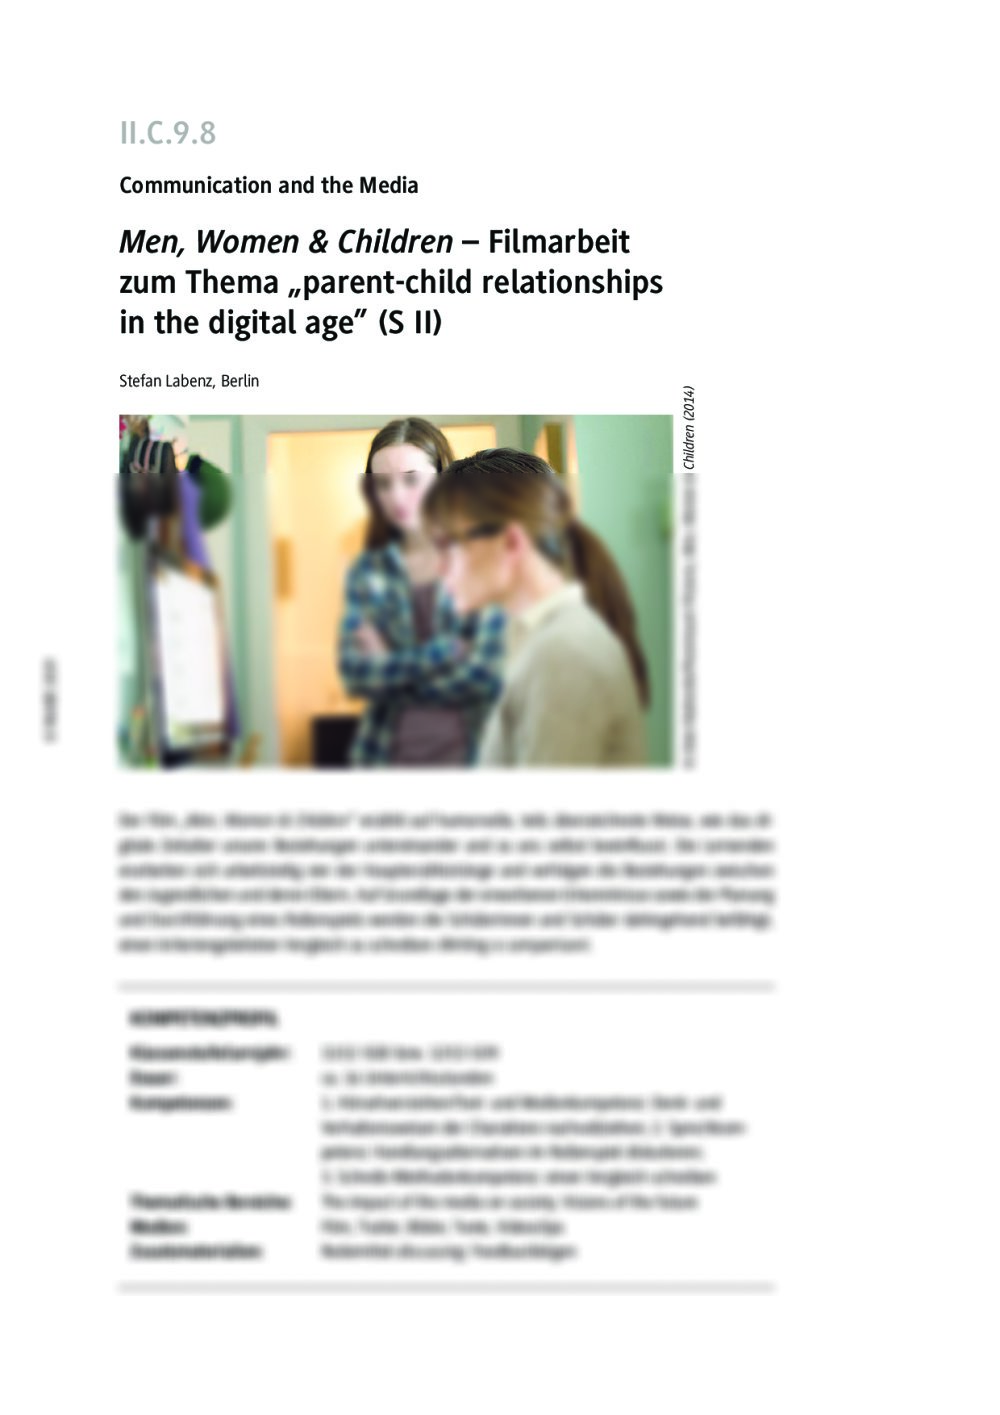 Filmarbeit zu Men, Women & Children - Seite 1